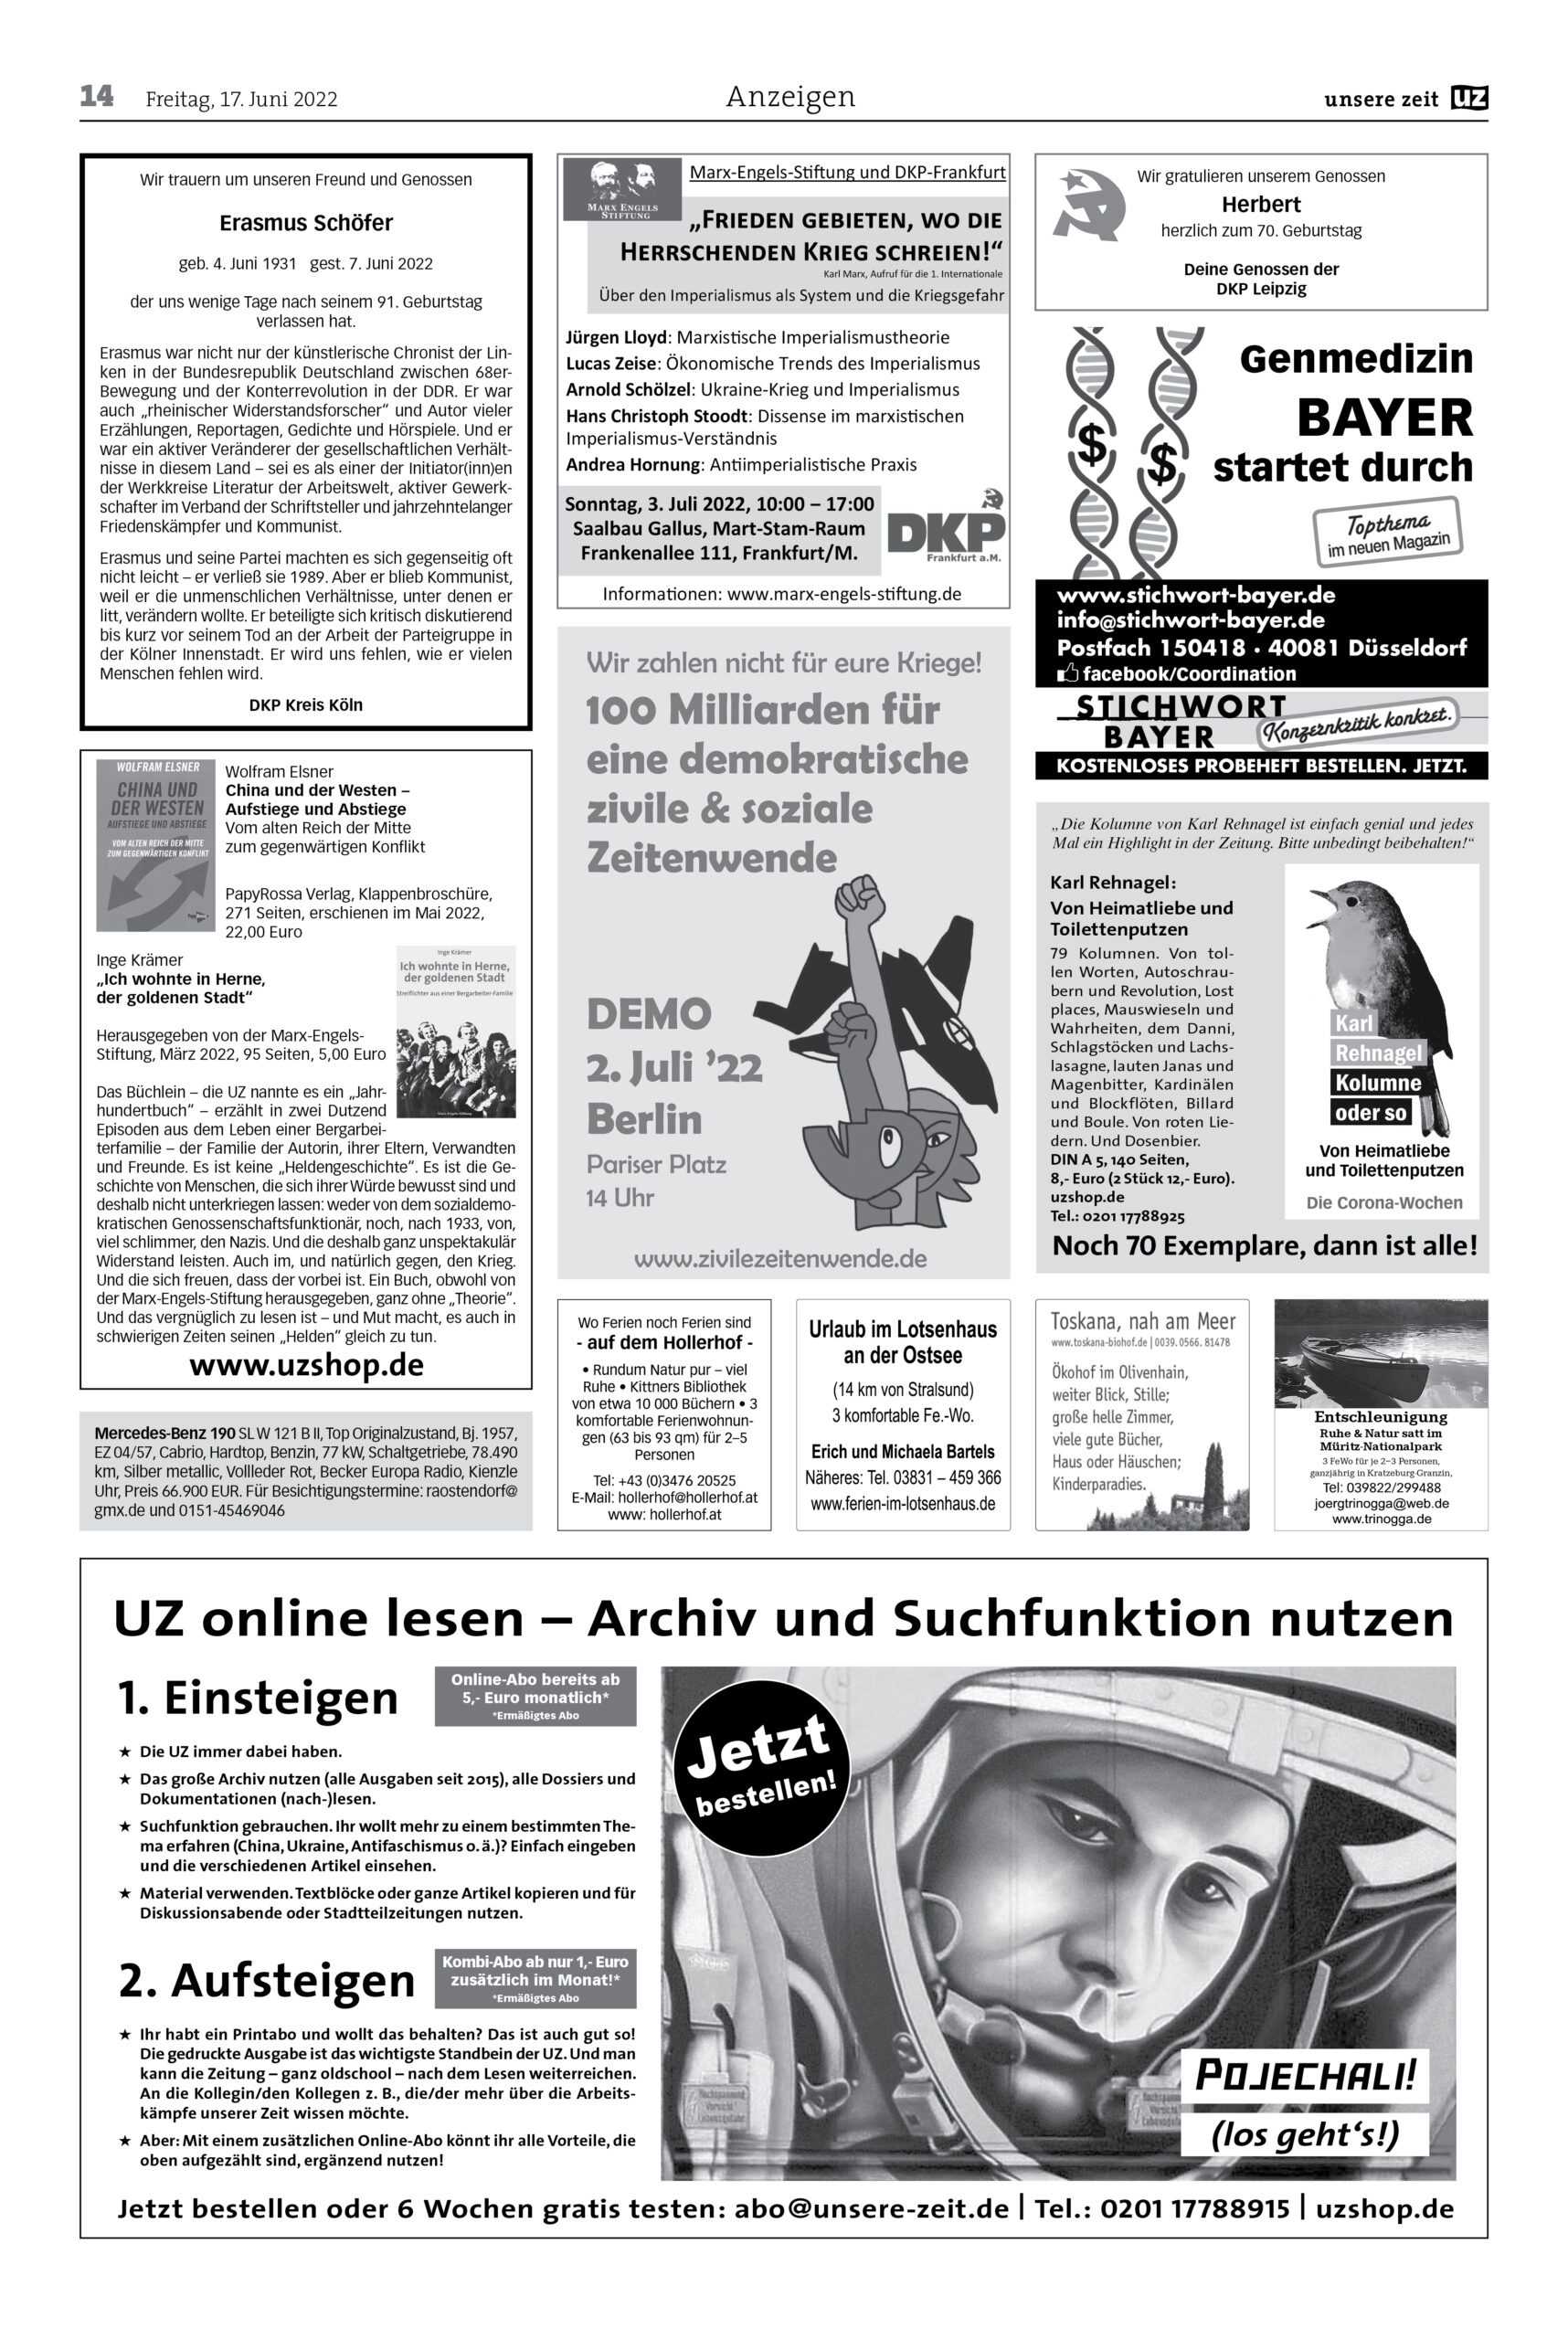 UZ 2022 24 Seite 14 scaled - Anzeigen 2022-24 - Anzeigen - Anzeigen